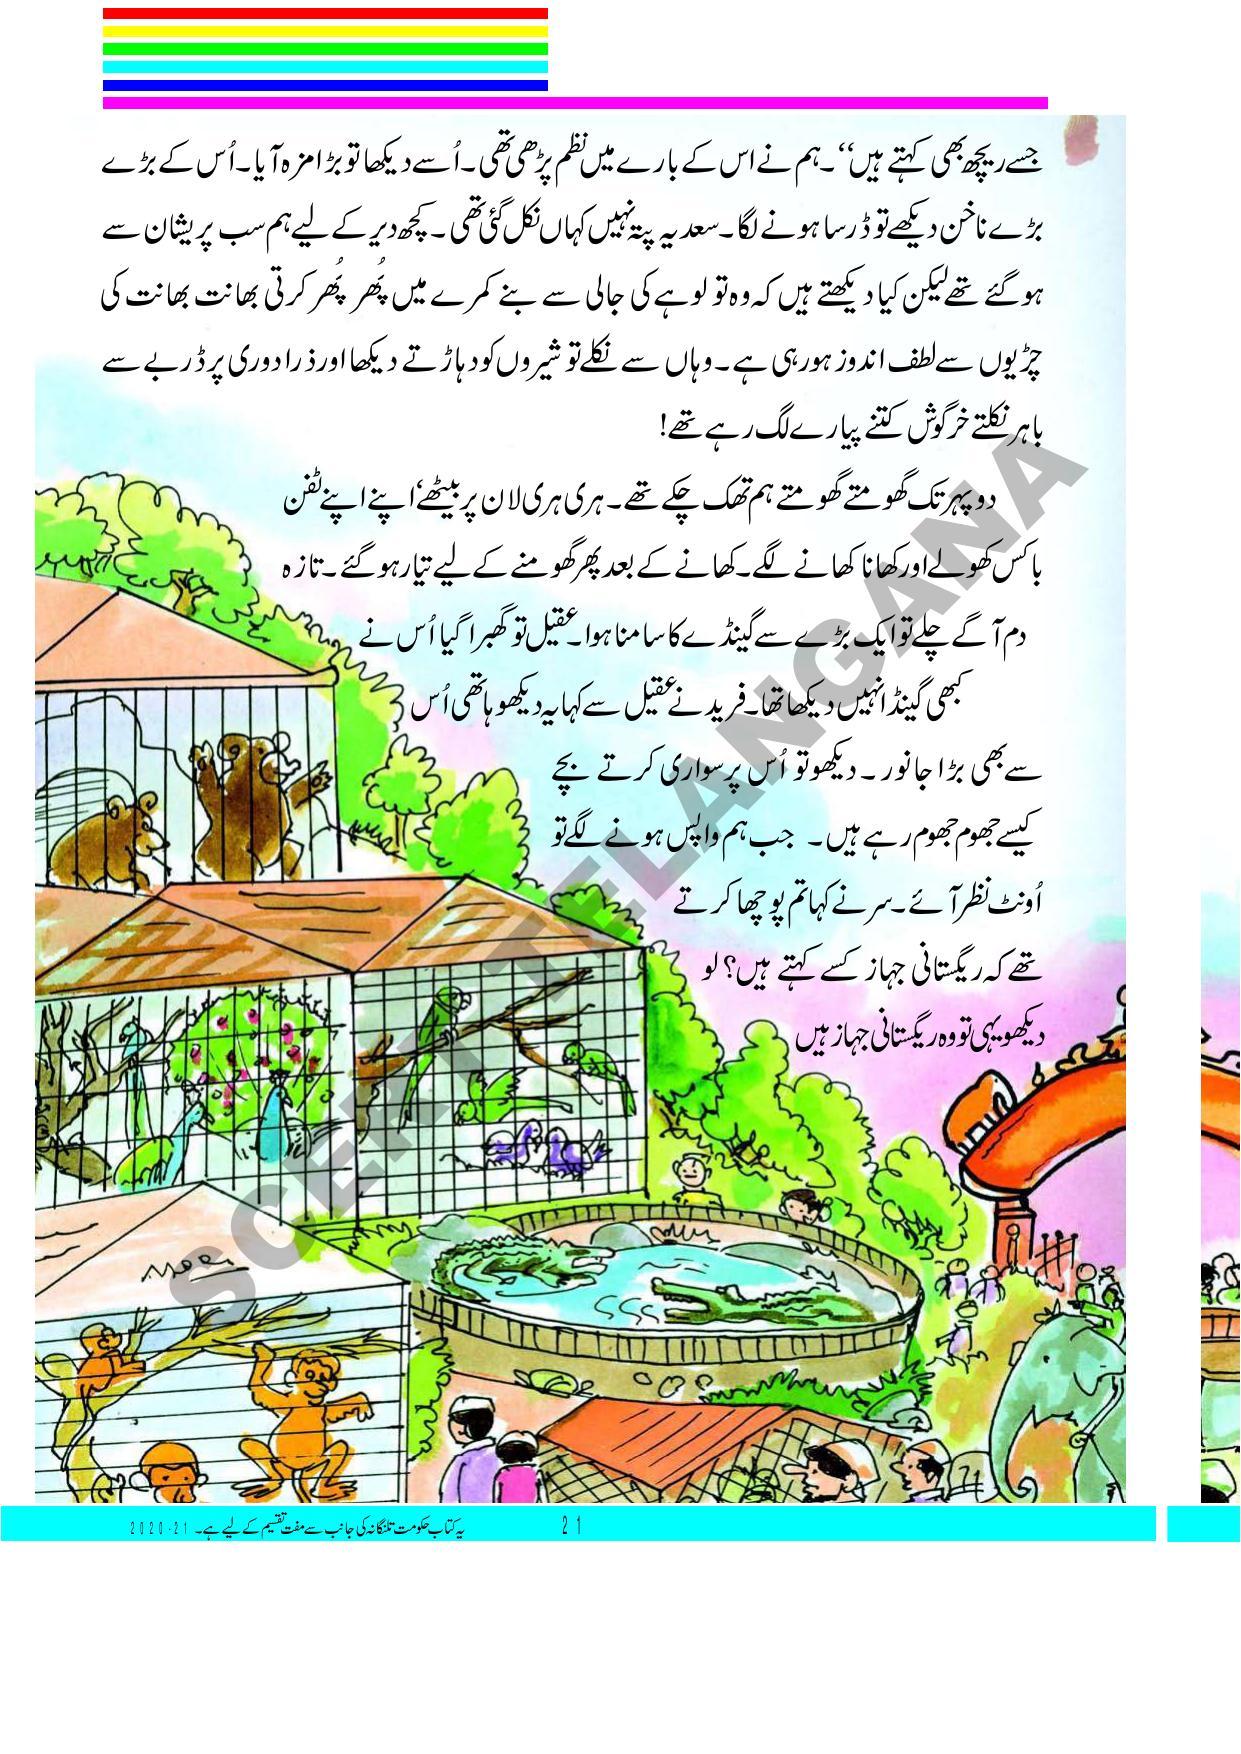 TS SCERT Class 3 First Language(Urdu Medium) Text Book - Page 35